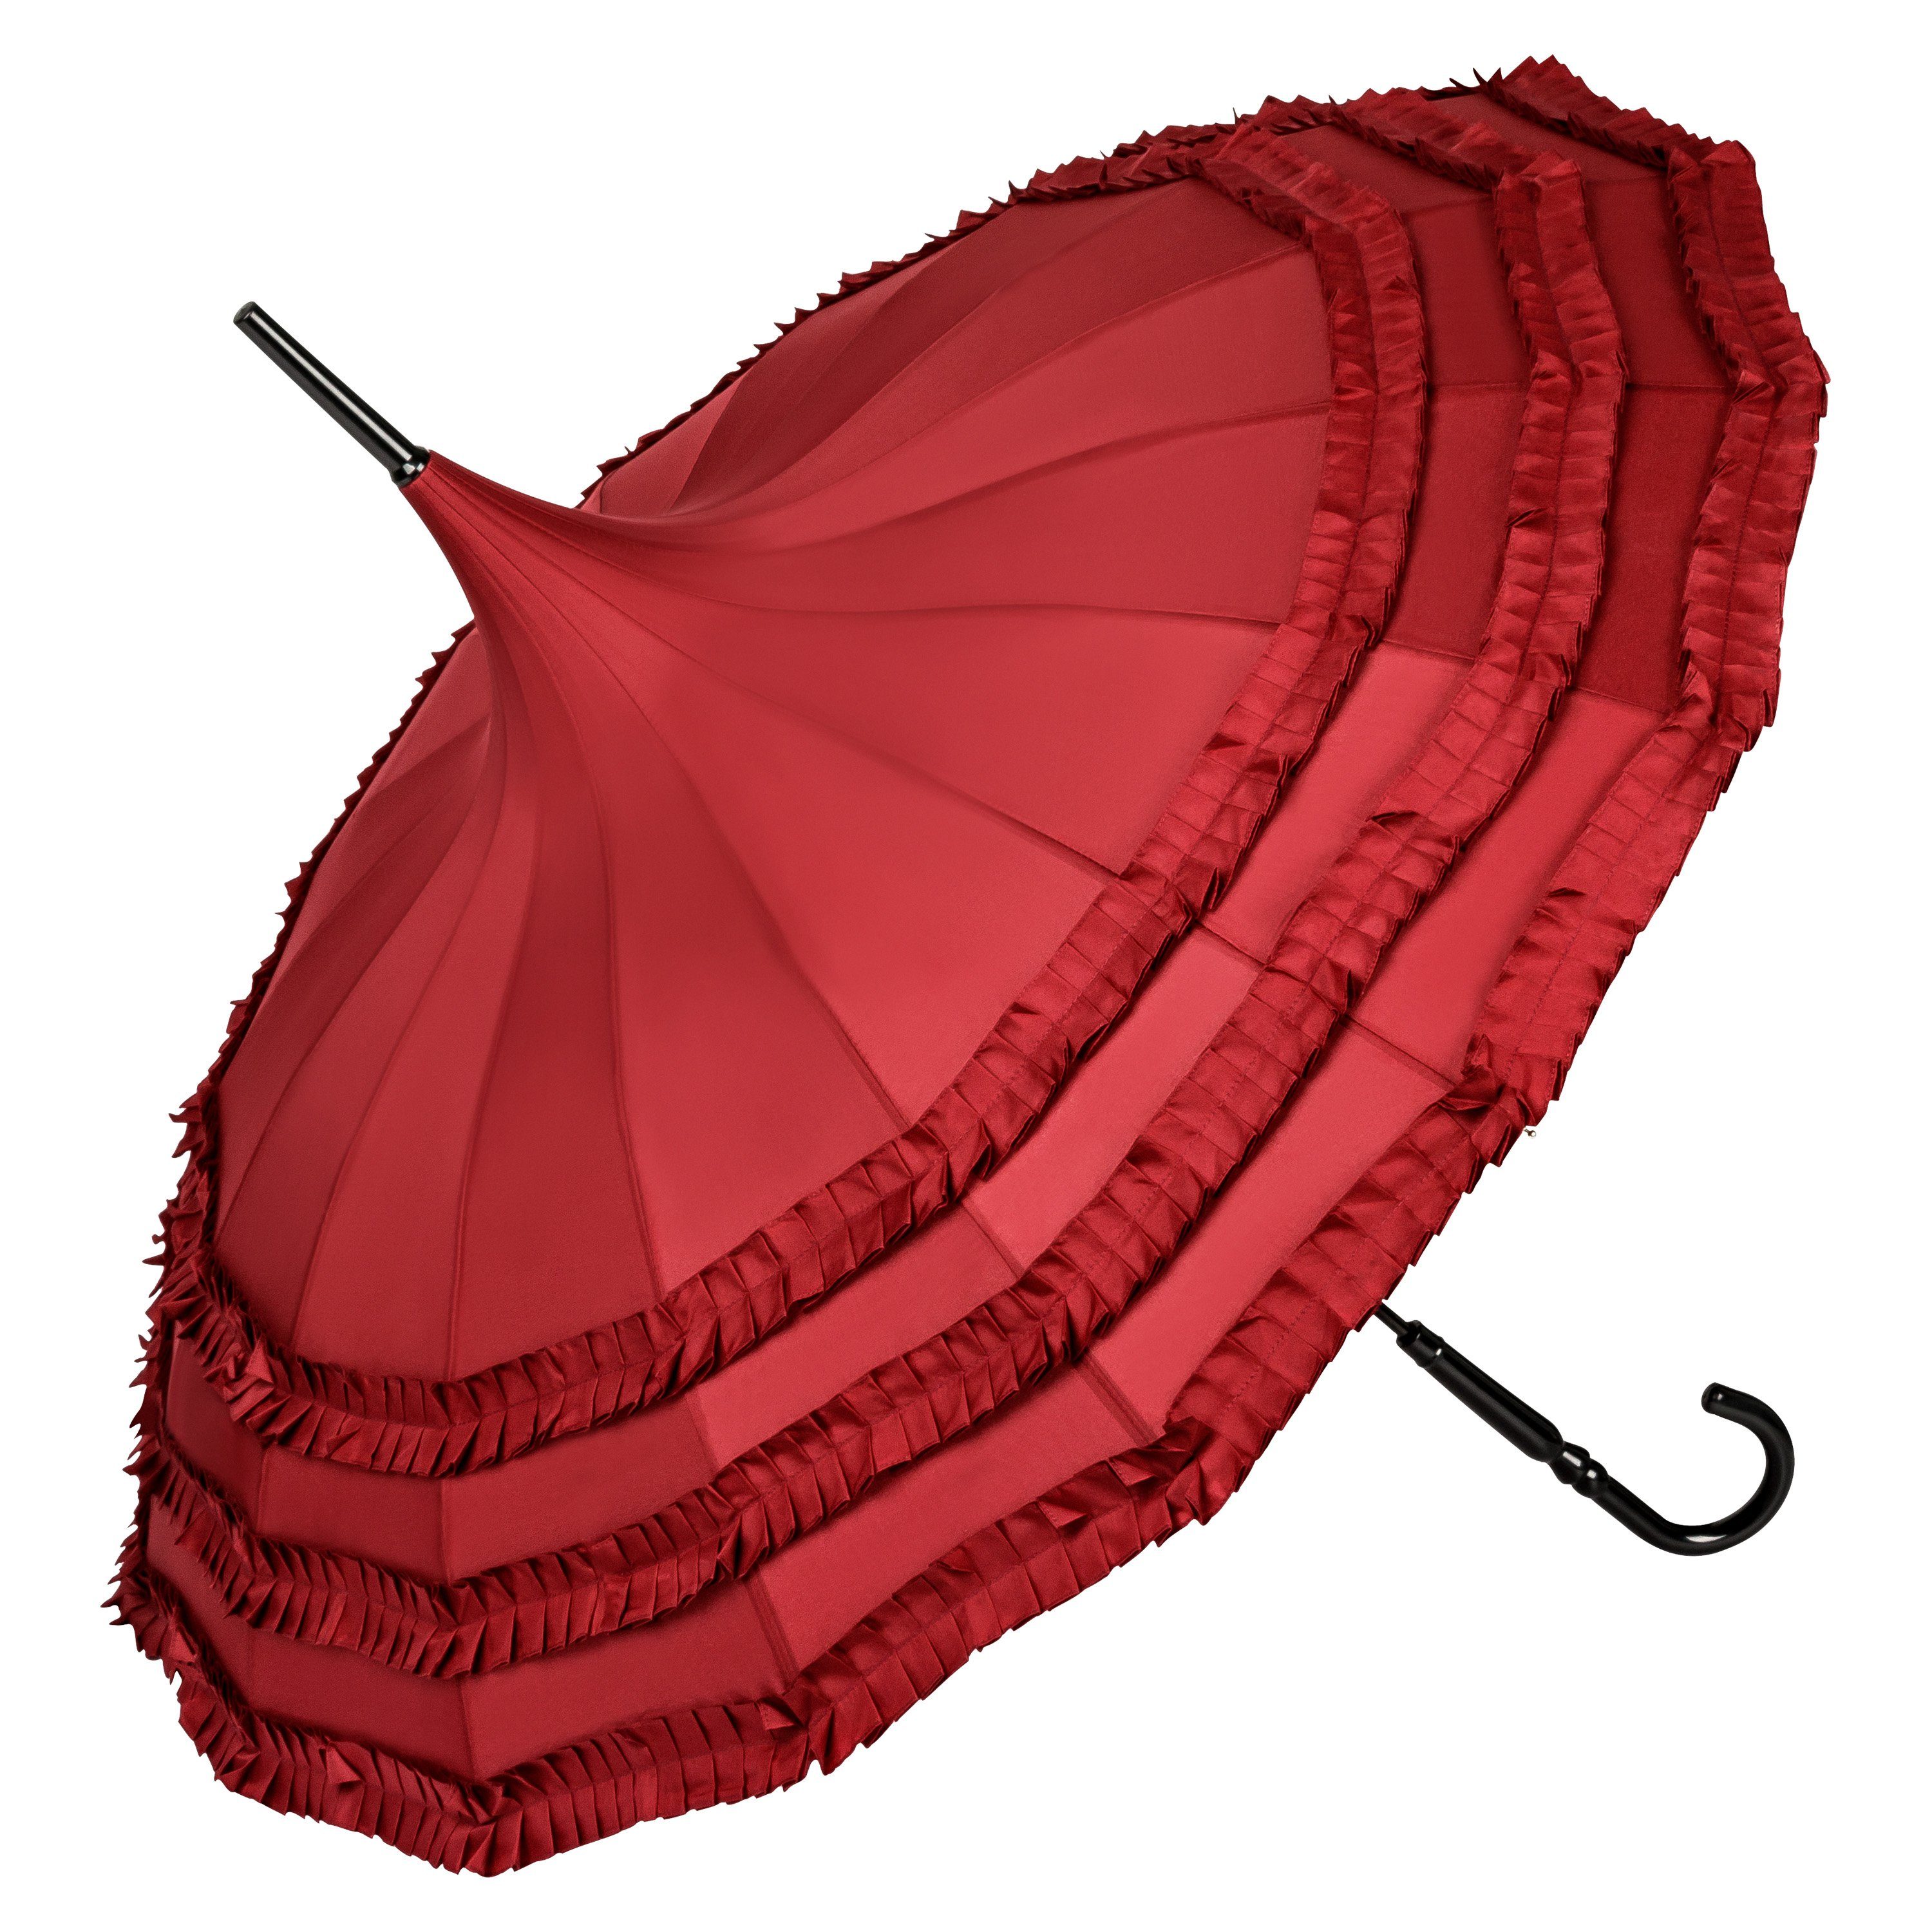 von Lilienfeld Stockregenschirm Regenschirm Sonnenschirm Pagode Rüschen Sarah, Rüschenkante bordeaux